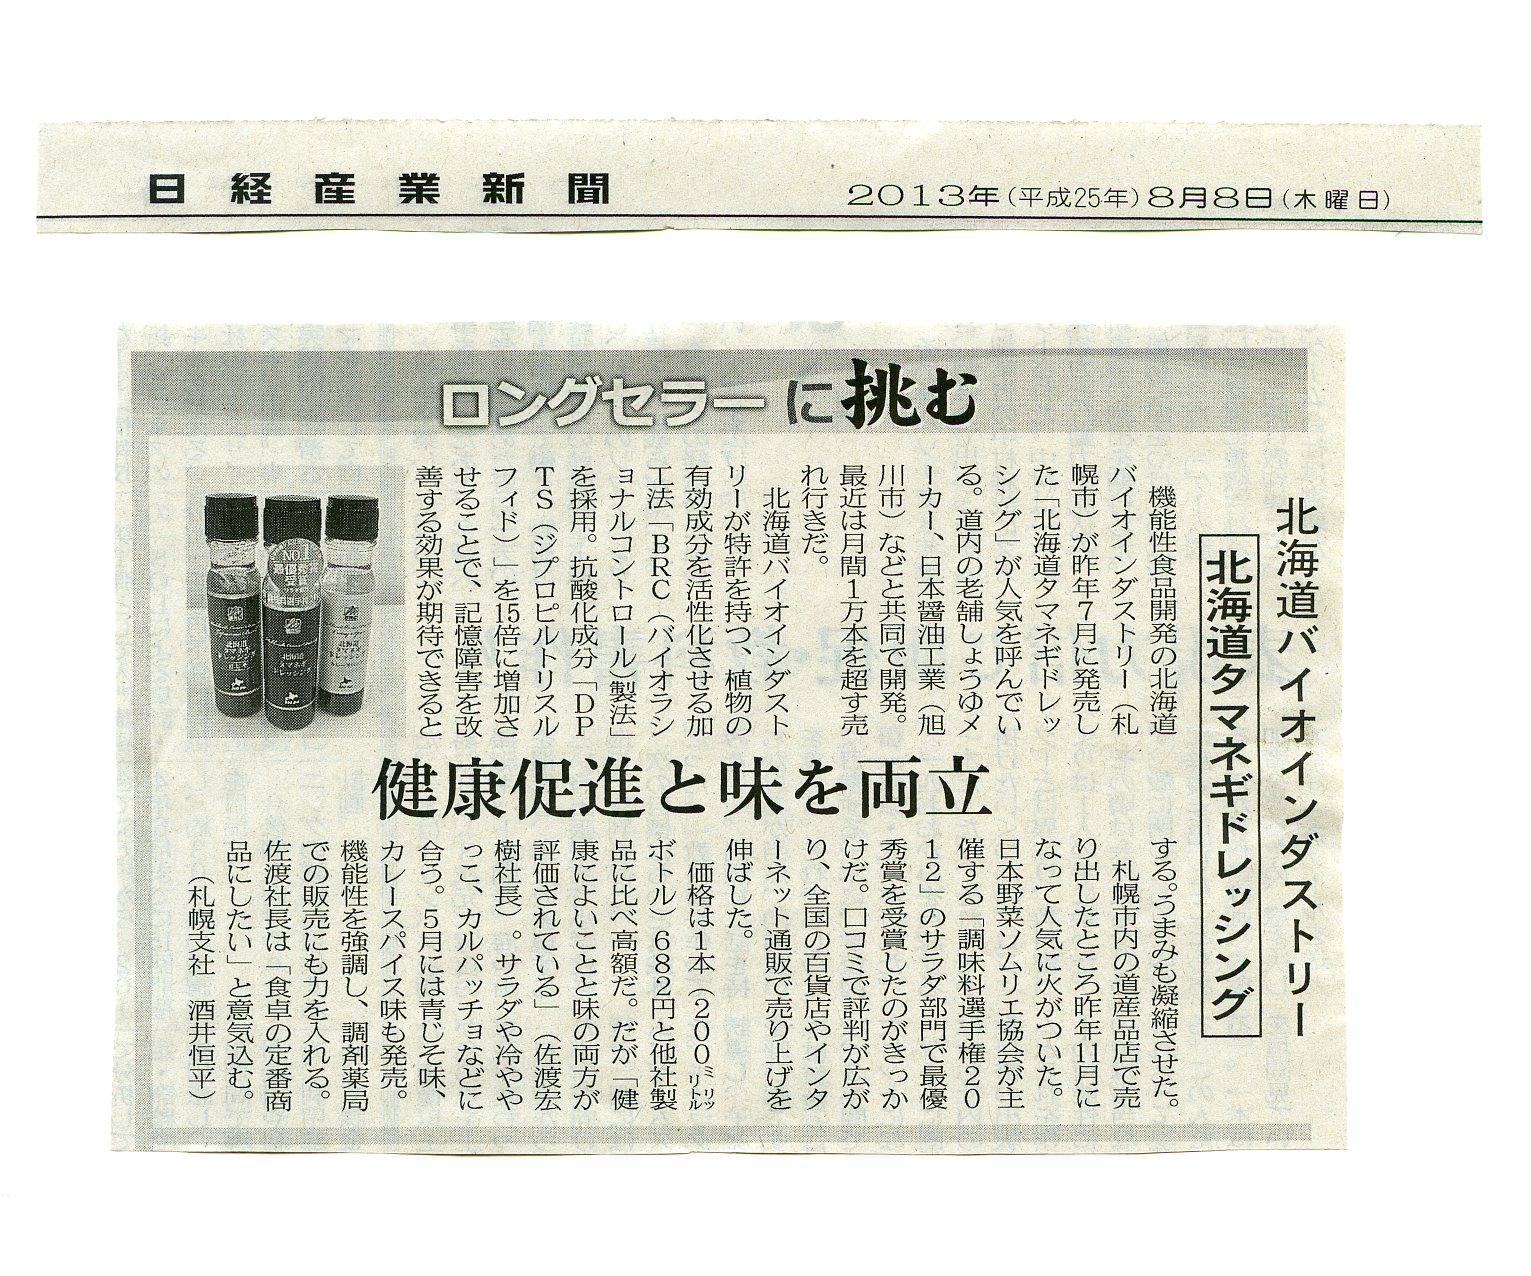 【20130808】日経産業新聞_ロングセラーに挑む